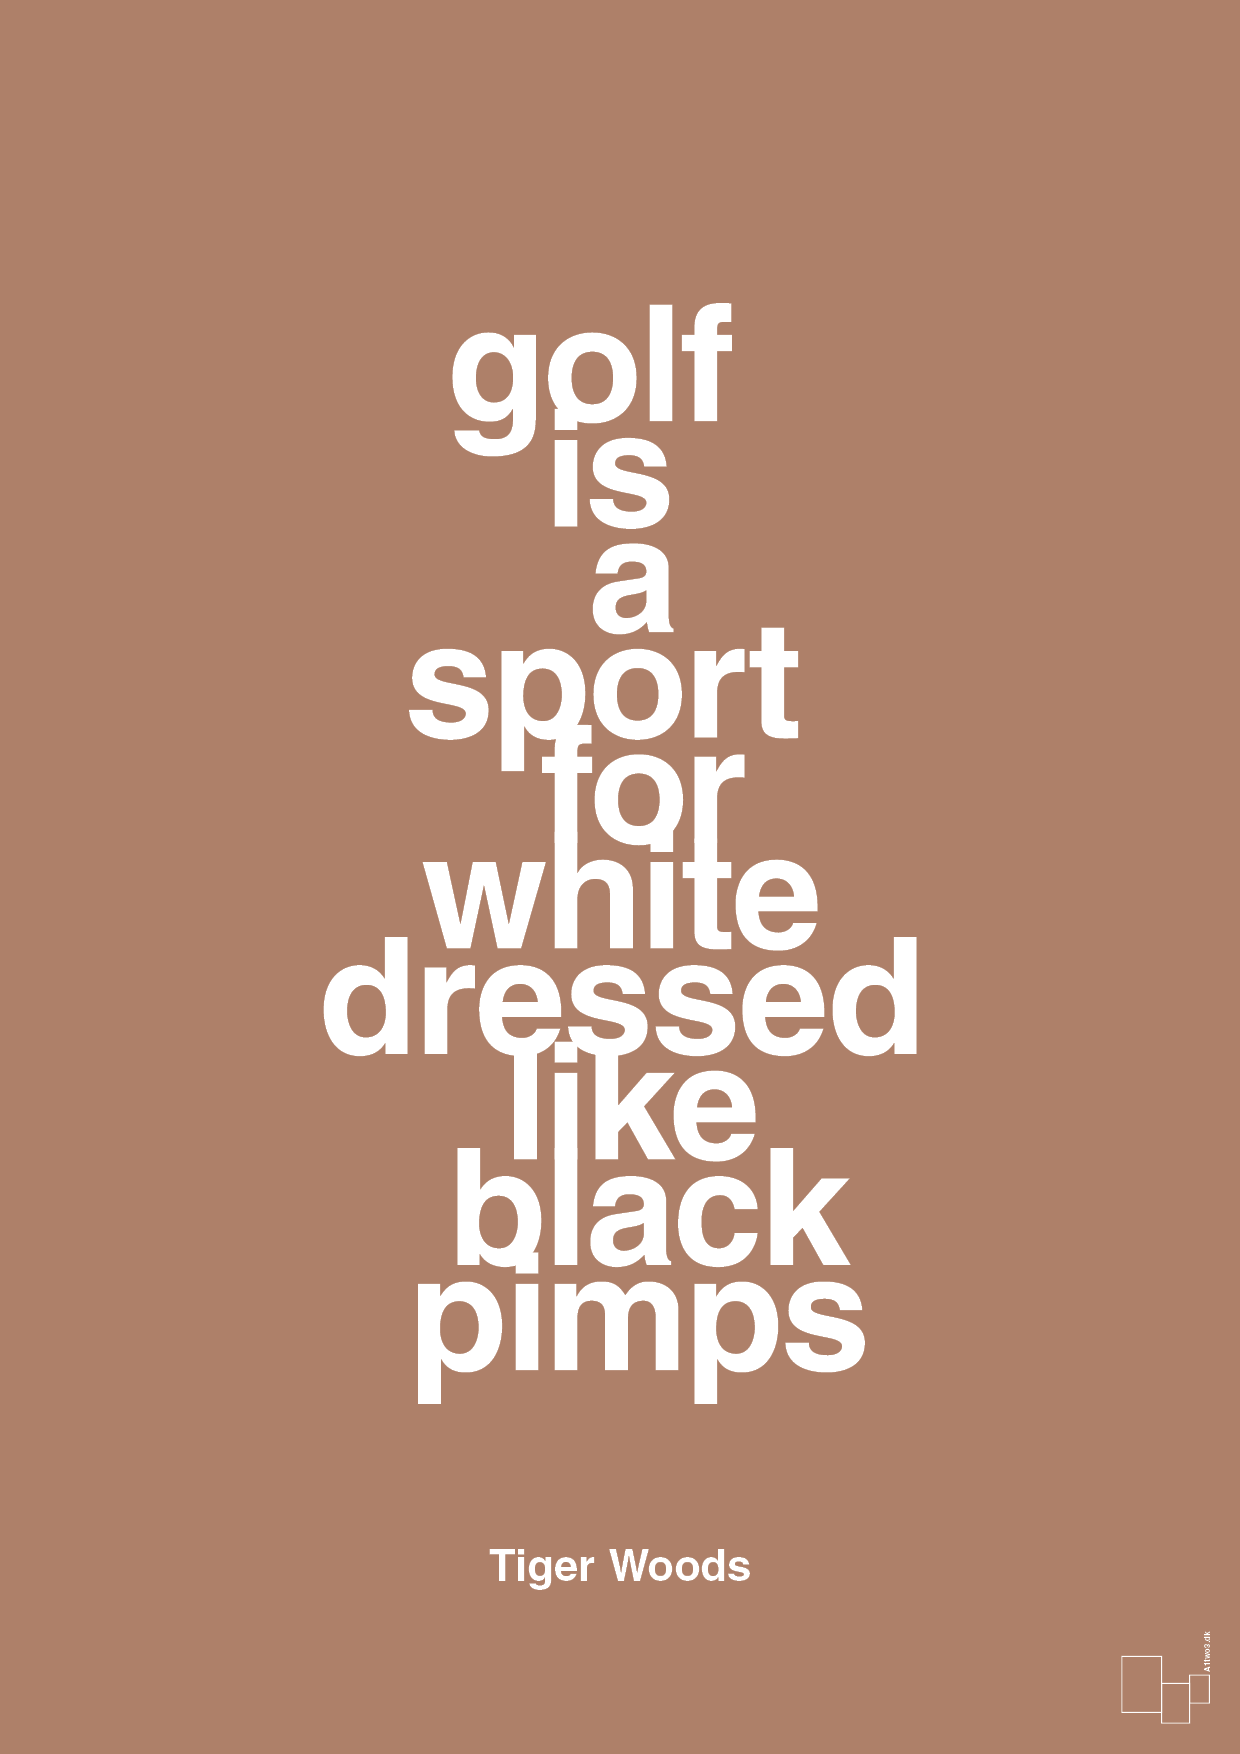 golf is a sport for white men dressed like black pimps - Plakat med Citater i Cider Spice